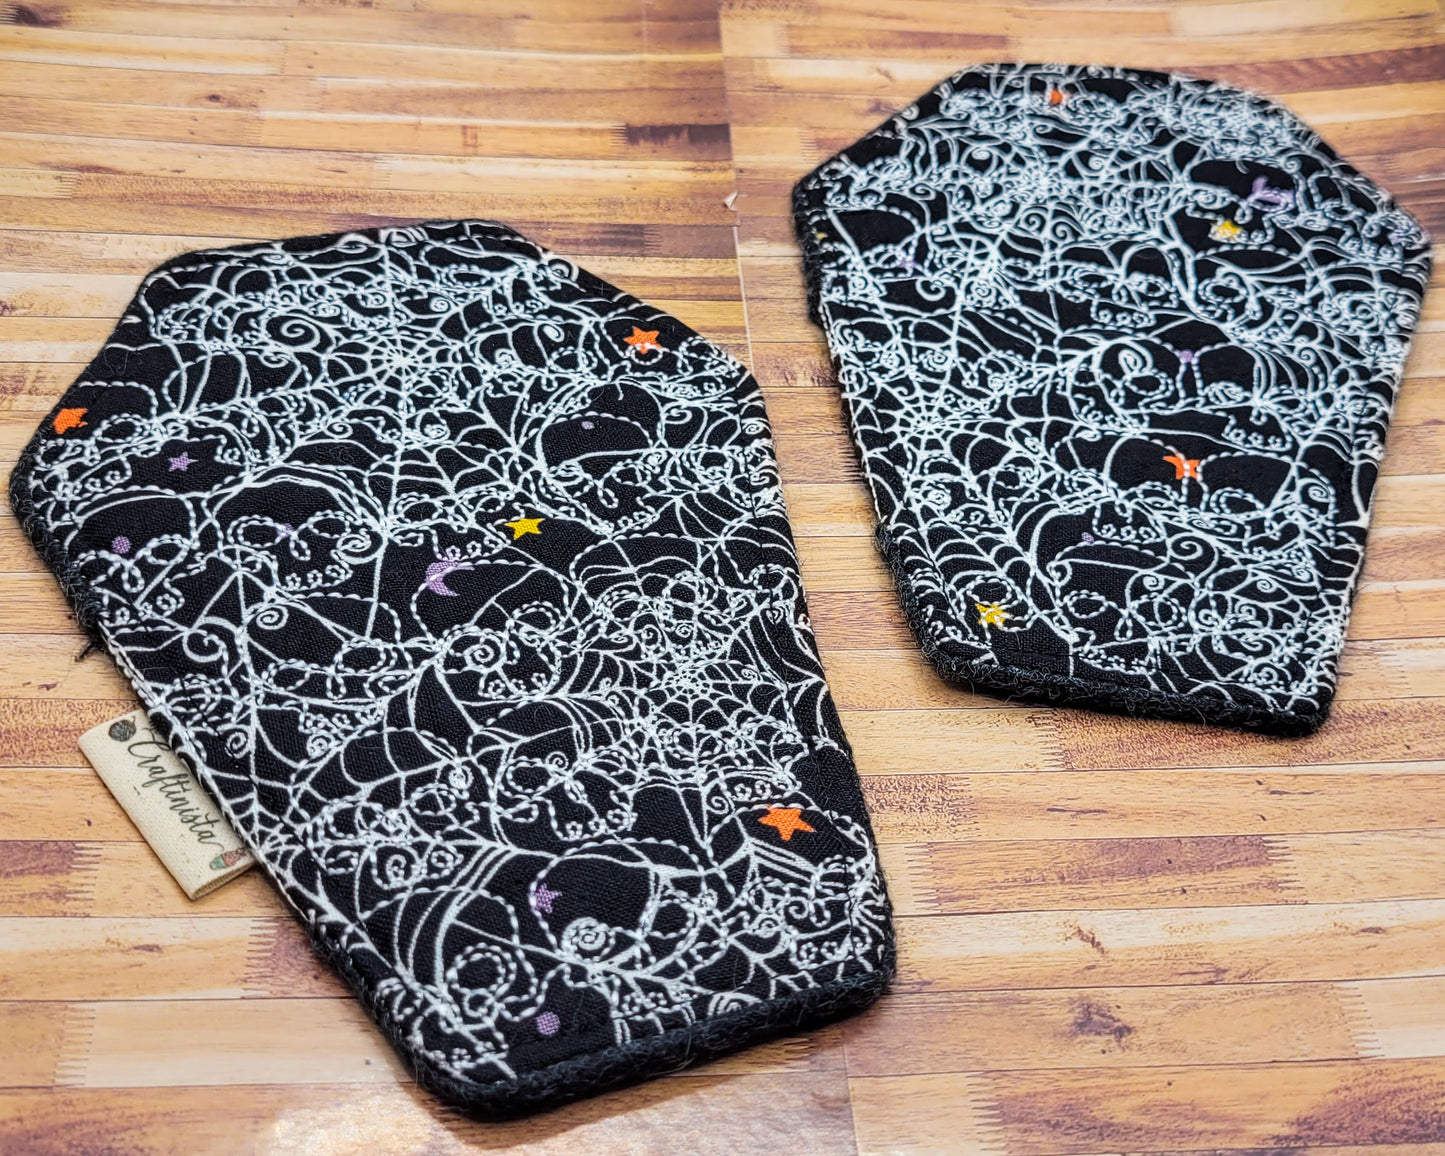 Spiderwebs Coffin-Shaped Skull Embroidered Mug Rug